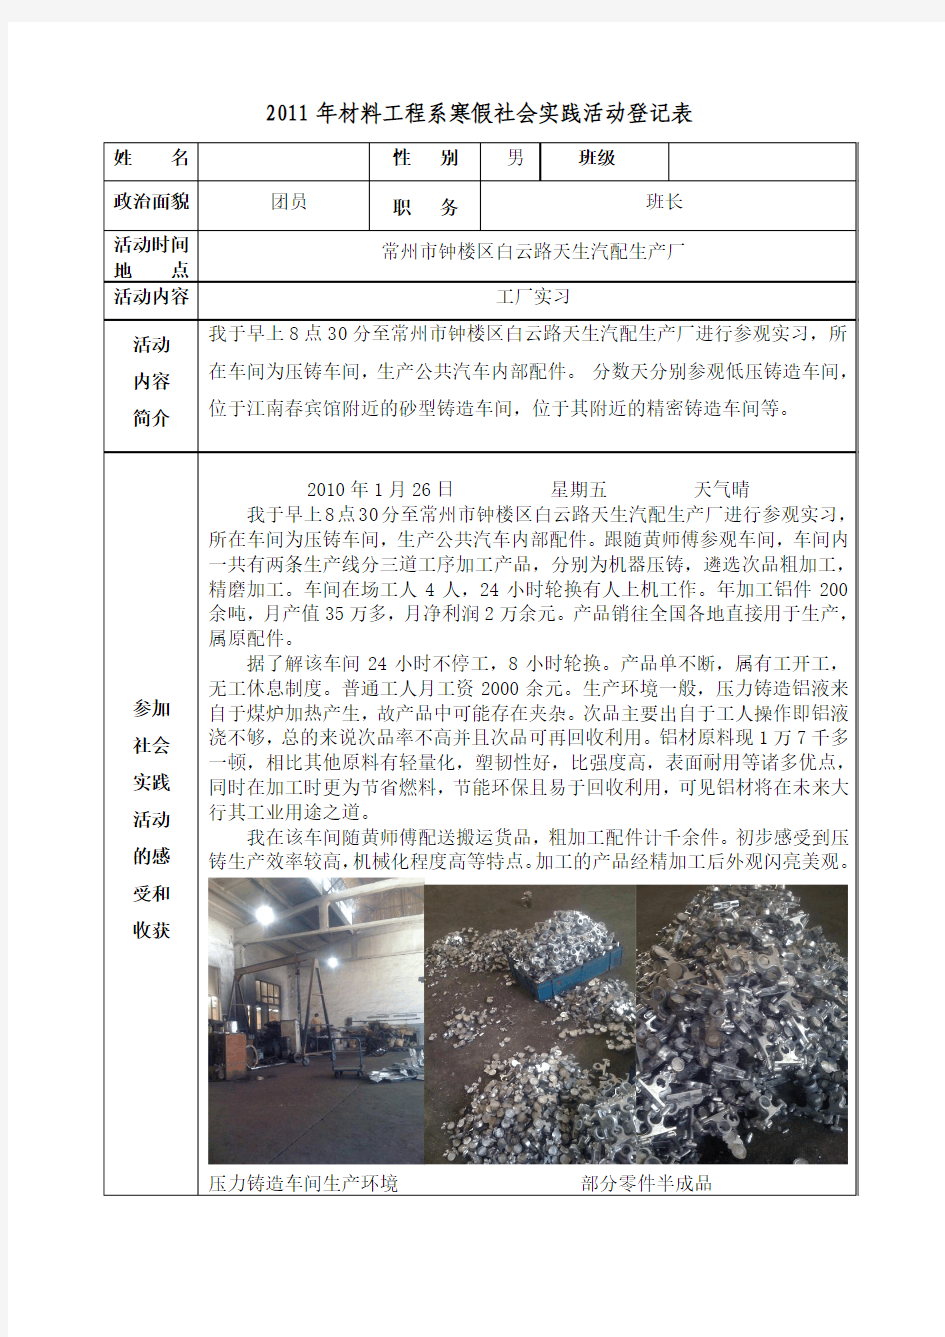 2013年大学寒假社会实践报告  工厂实习 (151)